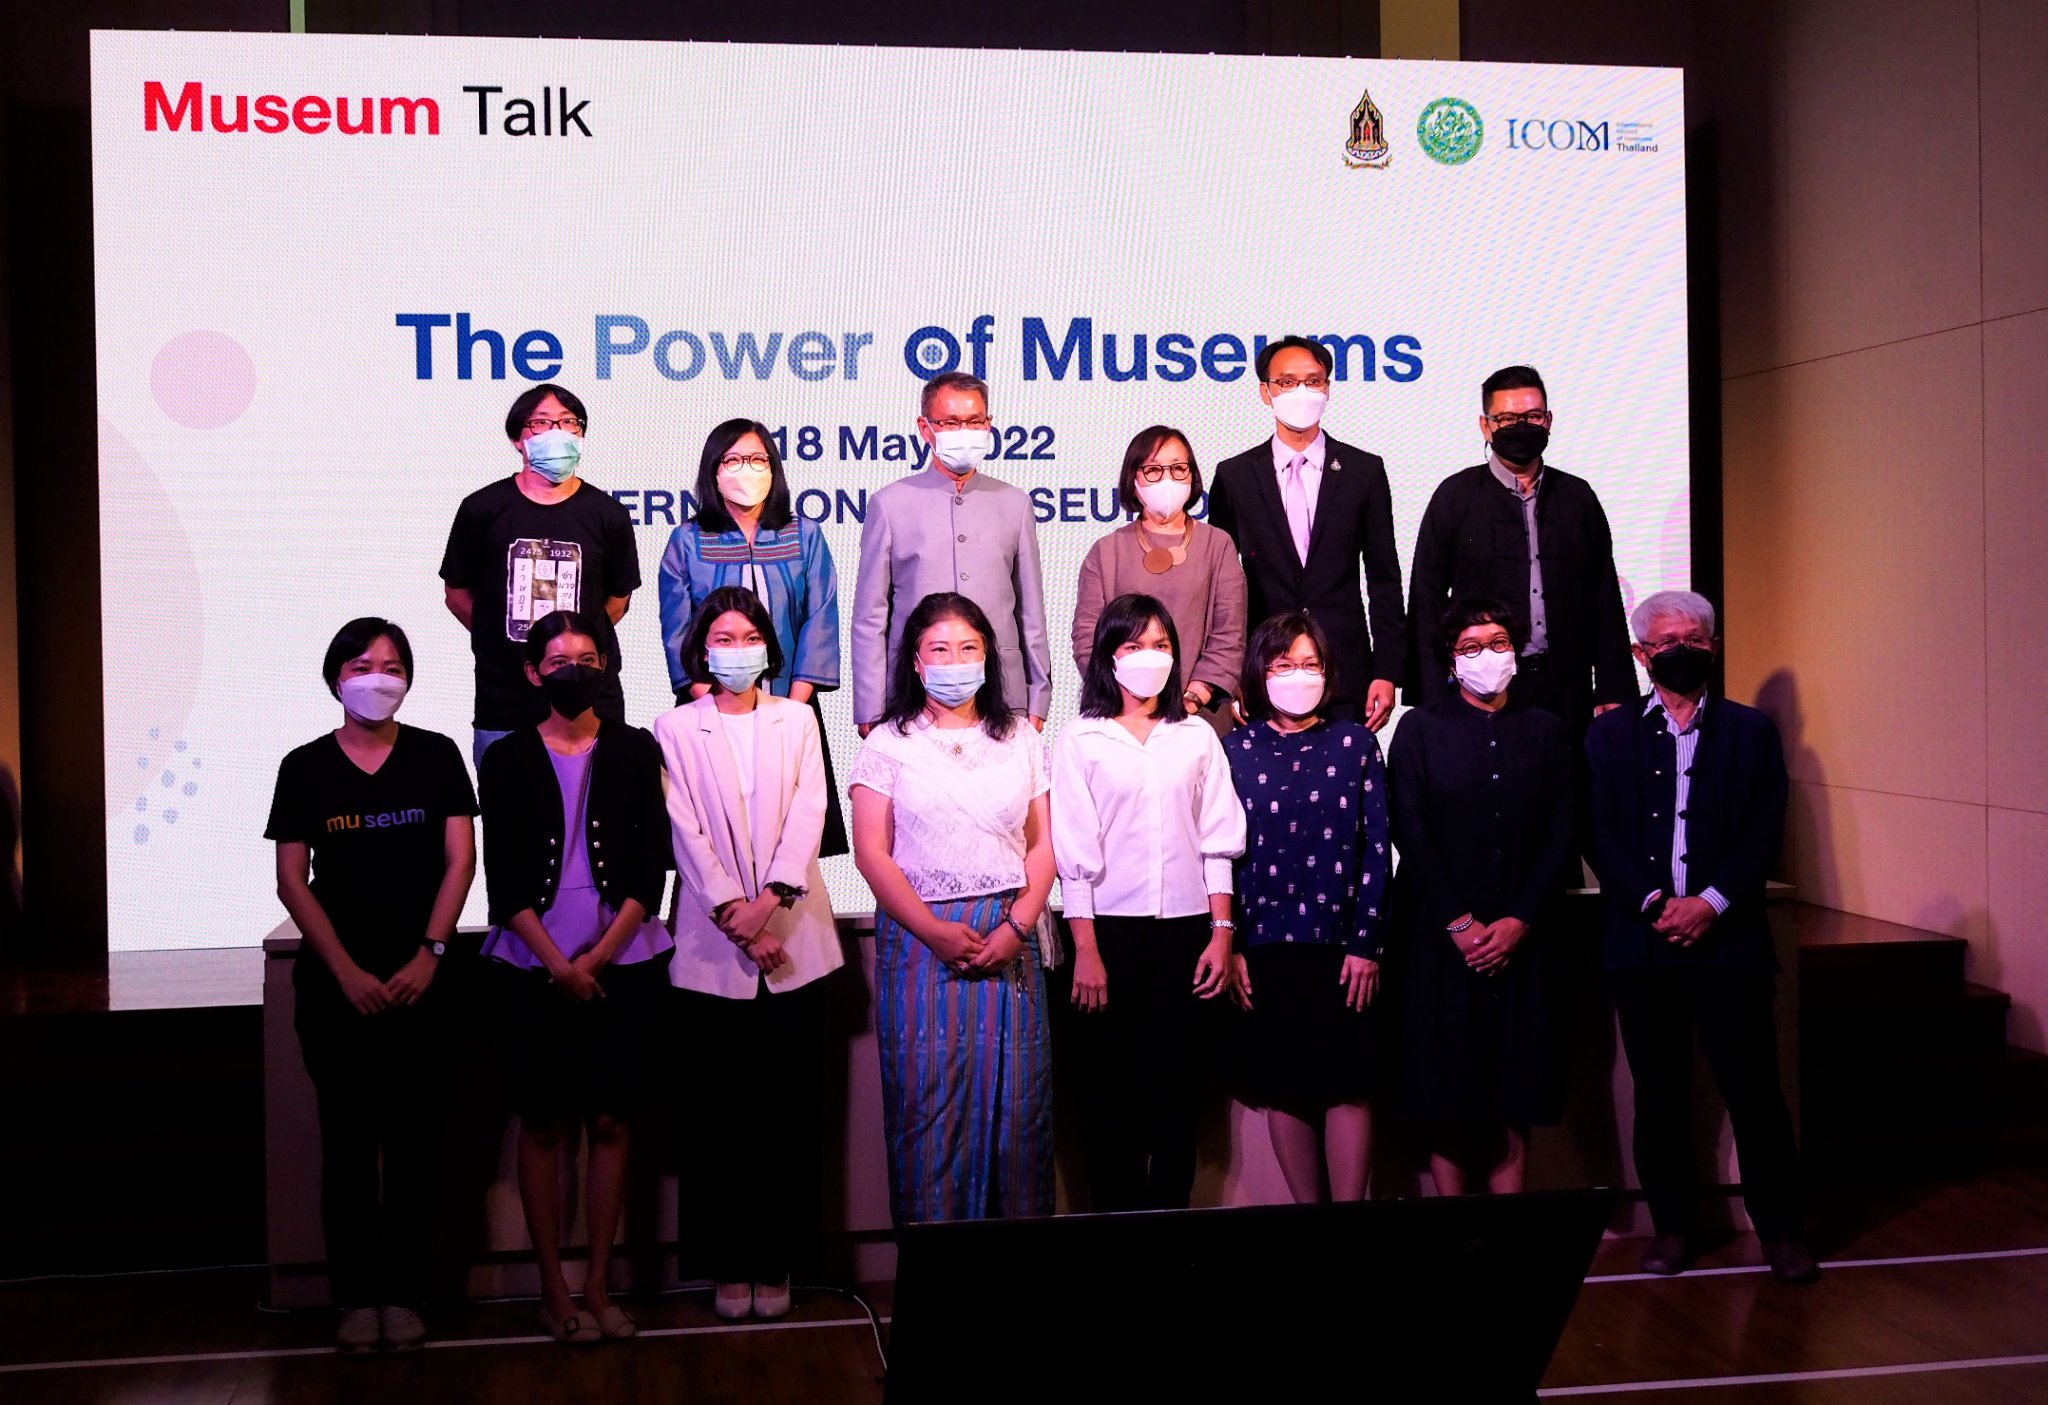 สำนักพิพิธภัณฑสถานแห่งชาติ กรมศิลปากร กระทรวงวัฒนธรรม ขอเชิญรับชมการถ่ายทอดสด MUSEUM TALK